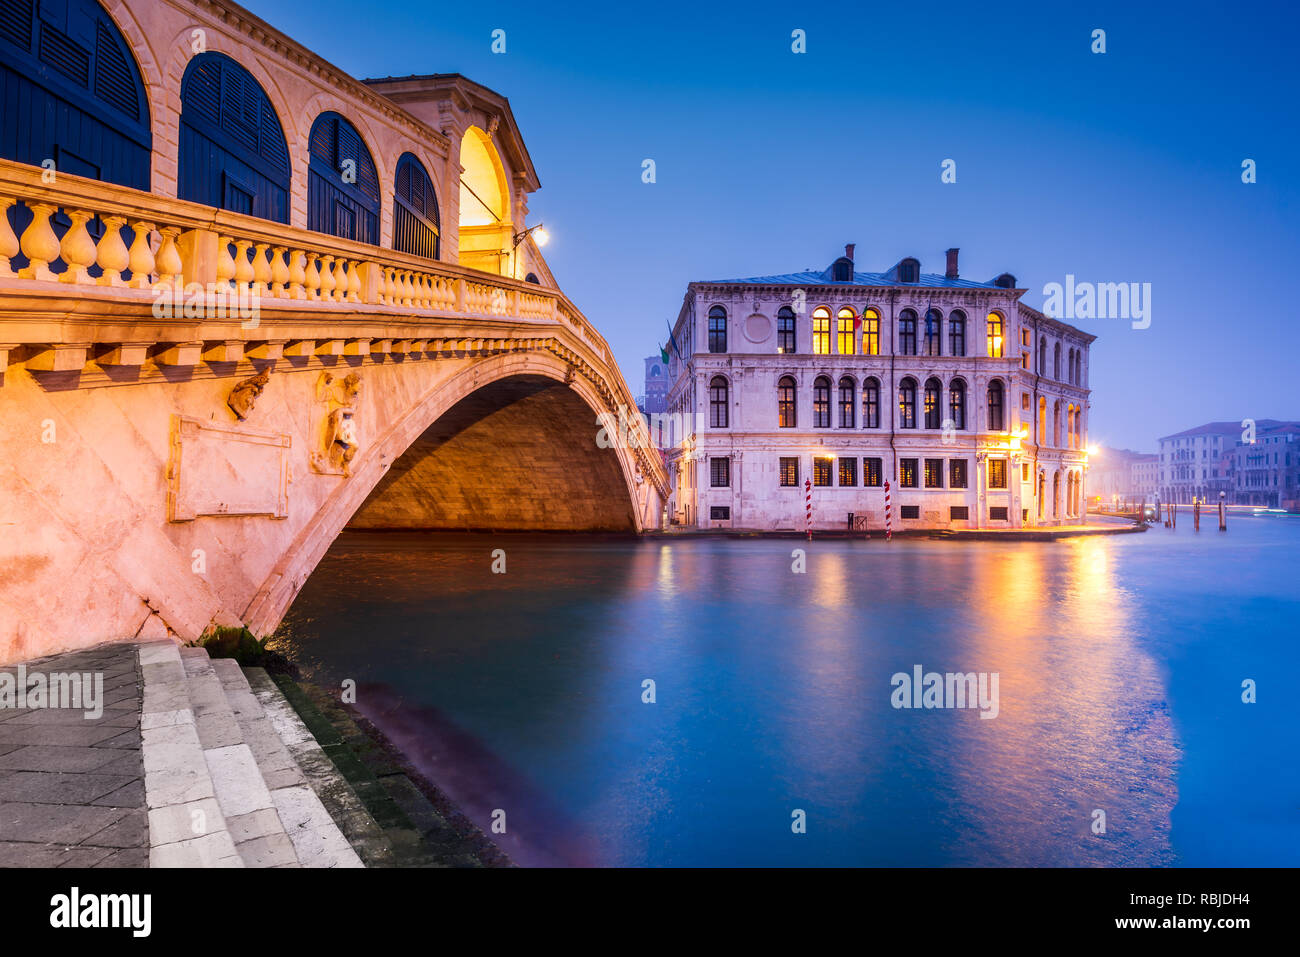 Venite, Italie - Nuit image avec Ponte di Rialto, le plus ancien pont enjambant le Grand Canal, Venise. Banque D'Images